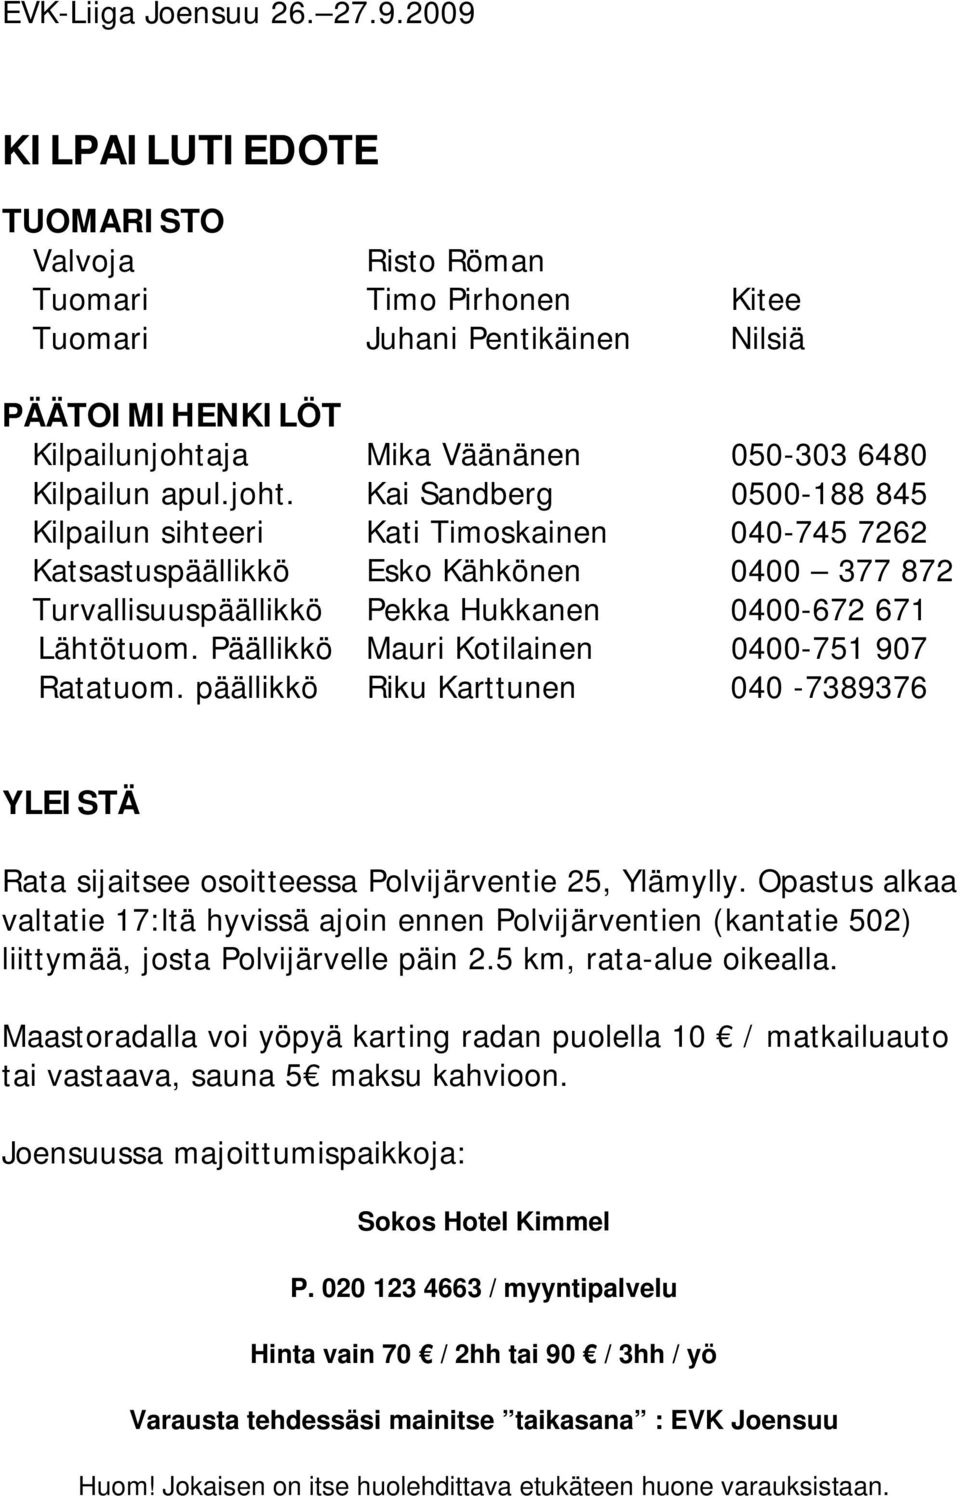 ja Mika Väänänen 050-303 6480 Kilpailun apul.joht.